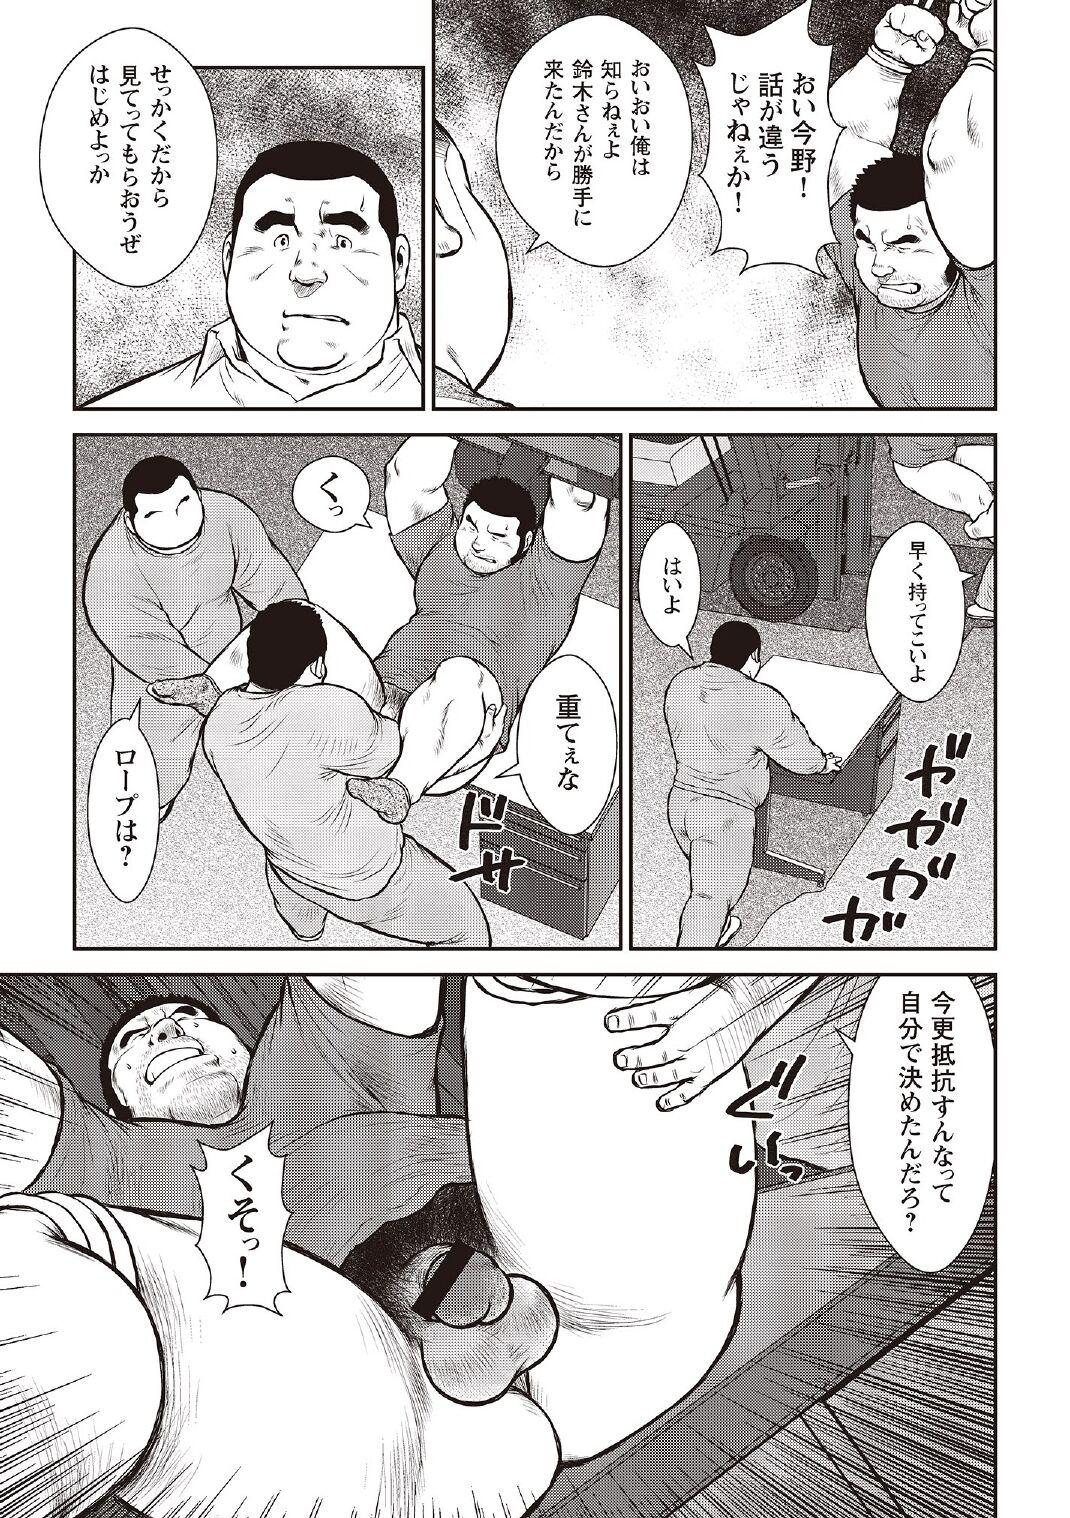 [Ebisubashi Seizou] Ebisubashi Seizou Tanpen Manga Shuu 2 Fuuun! Danshi Ryou [Bunsatsuban] PART 3 Bousou Hantou Taifuu Zensen Ch. 3 ~ Ch. 5 [Digital] 40